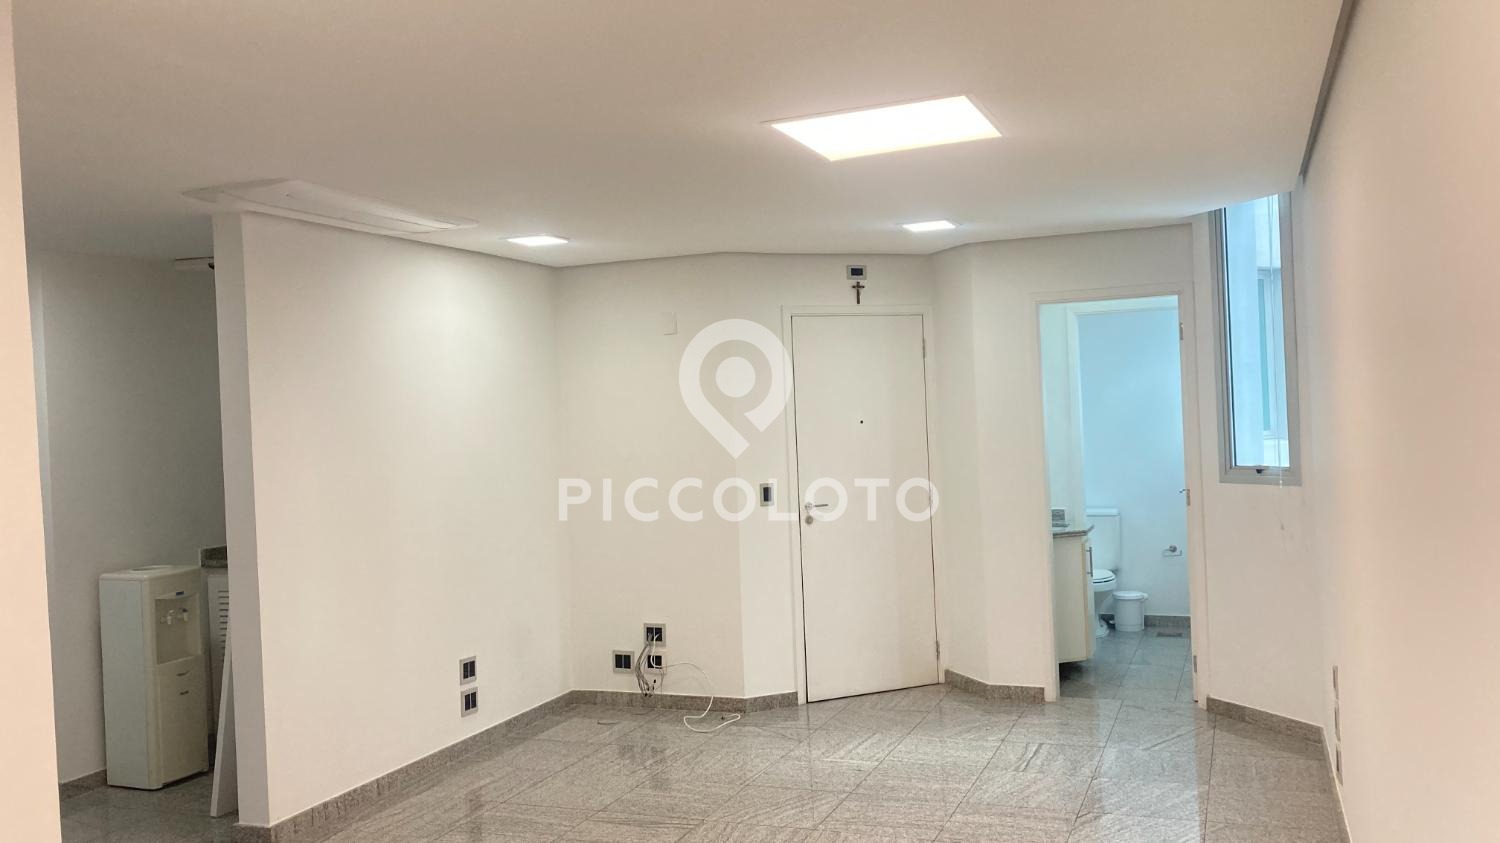 Piccoloto -Sala à venda no Nova Campinas em Campinas